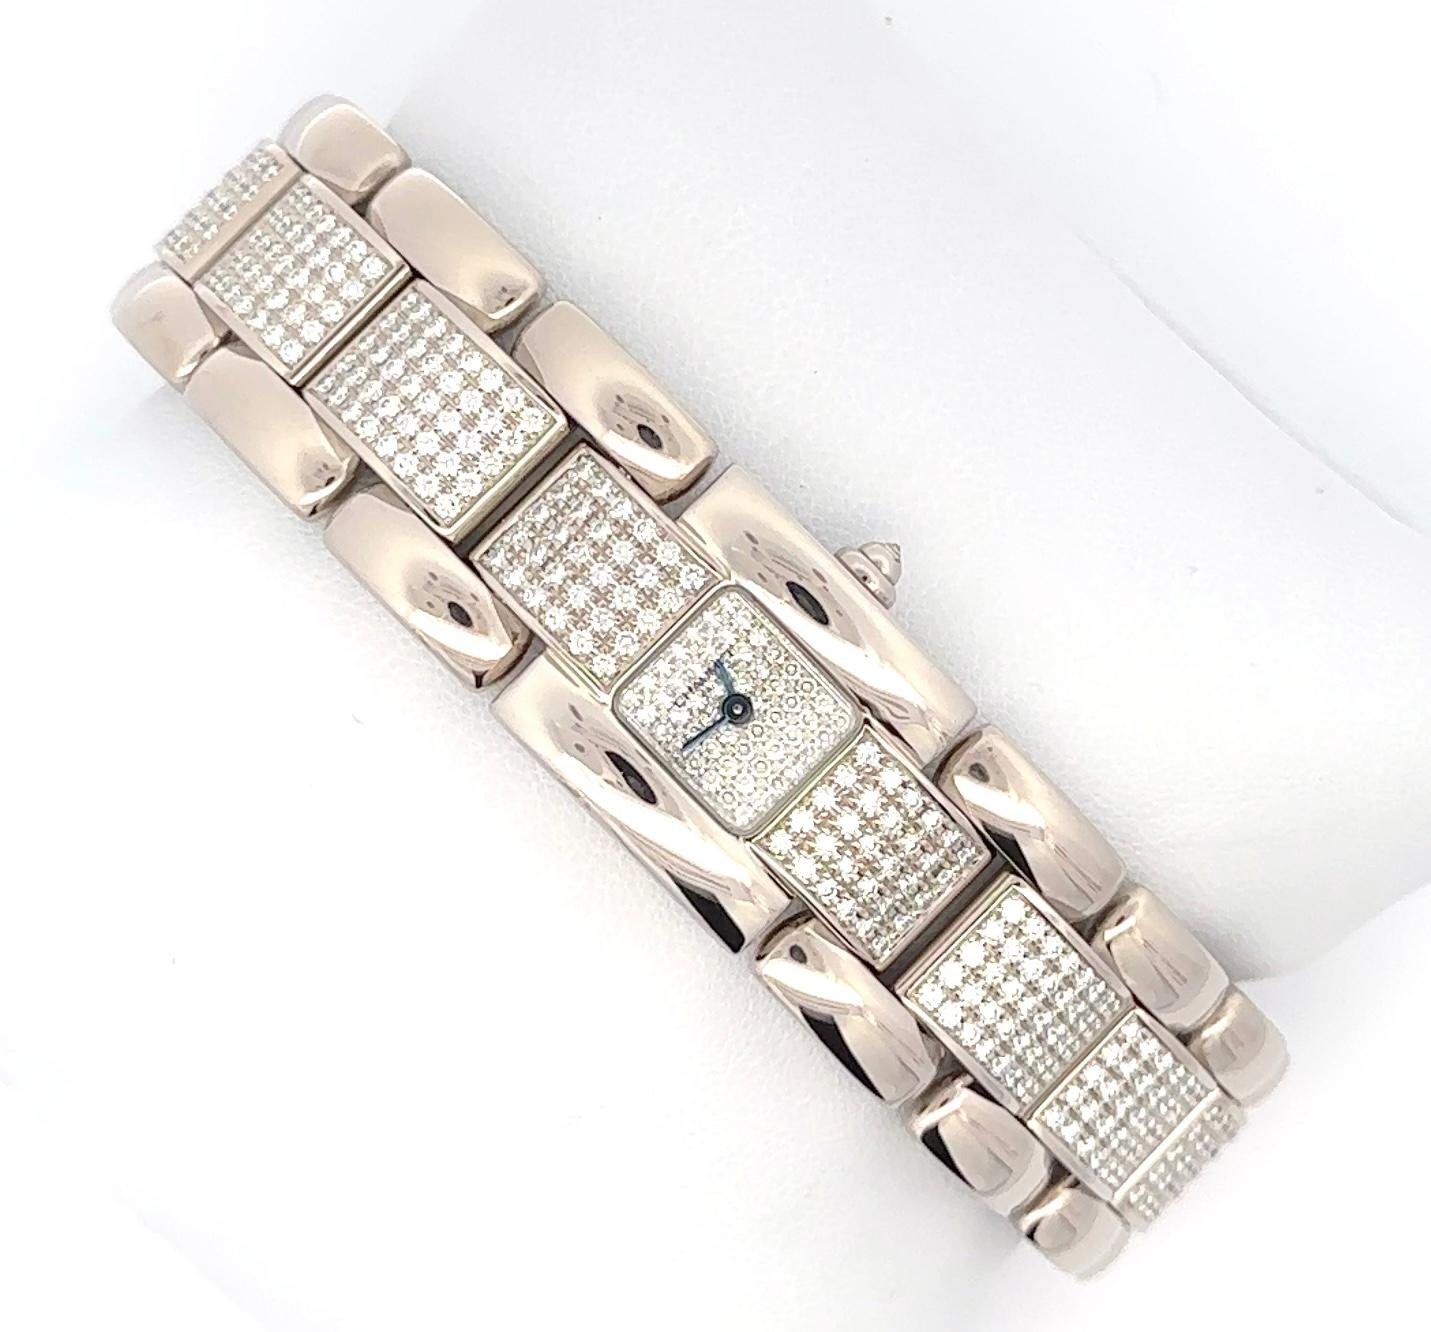 Il s'agit d'une magnifique, rare et presque irremplaçable montre Chaumet Diamond d'origine. La qualité des diamants est excellente, avec 9 carats de diamants incolores, VS+. Les diamants sont sertis en pavé. Le métal qui l'entoure est de l'or blanc